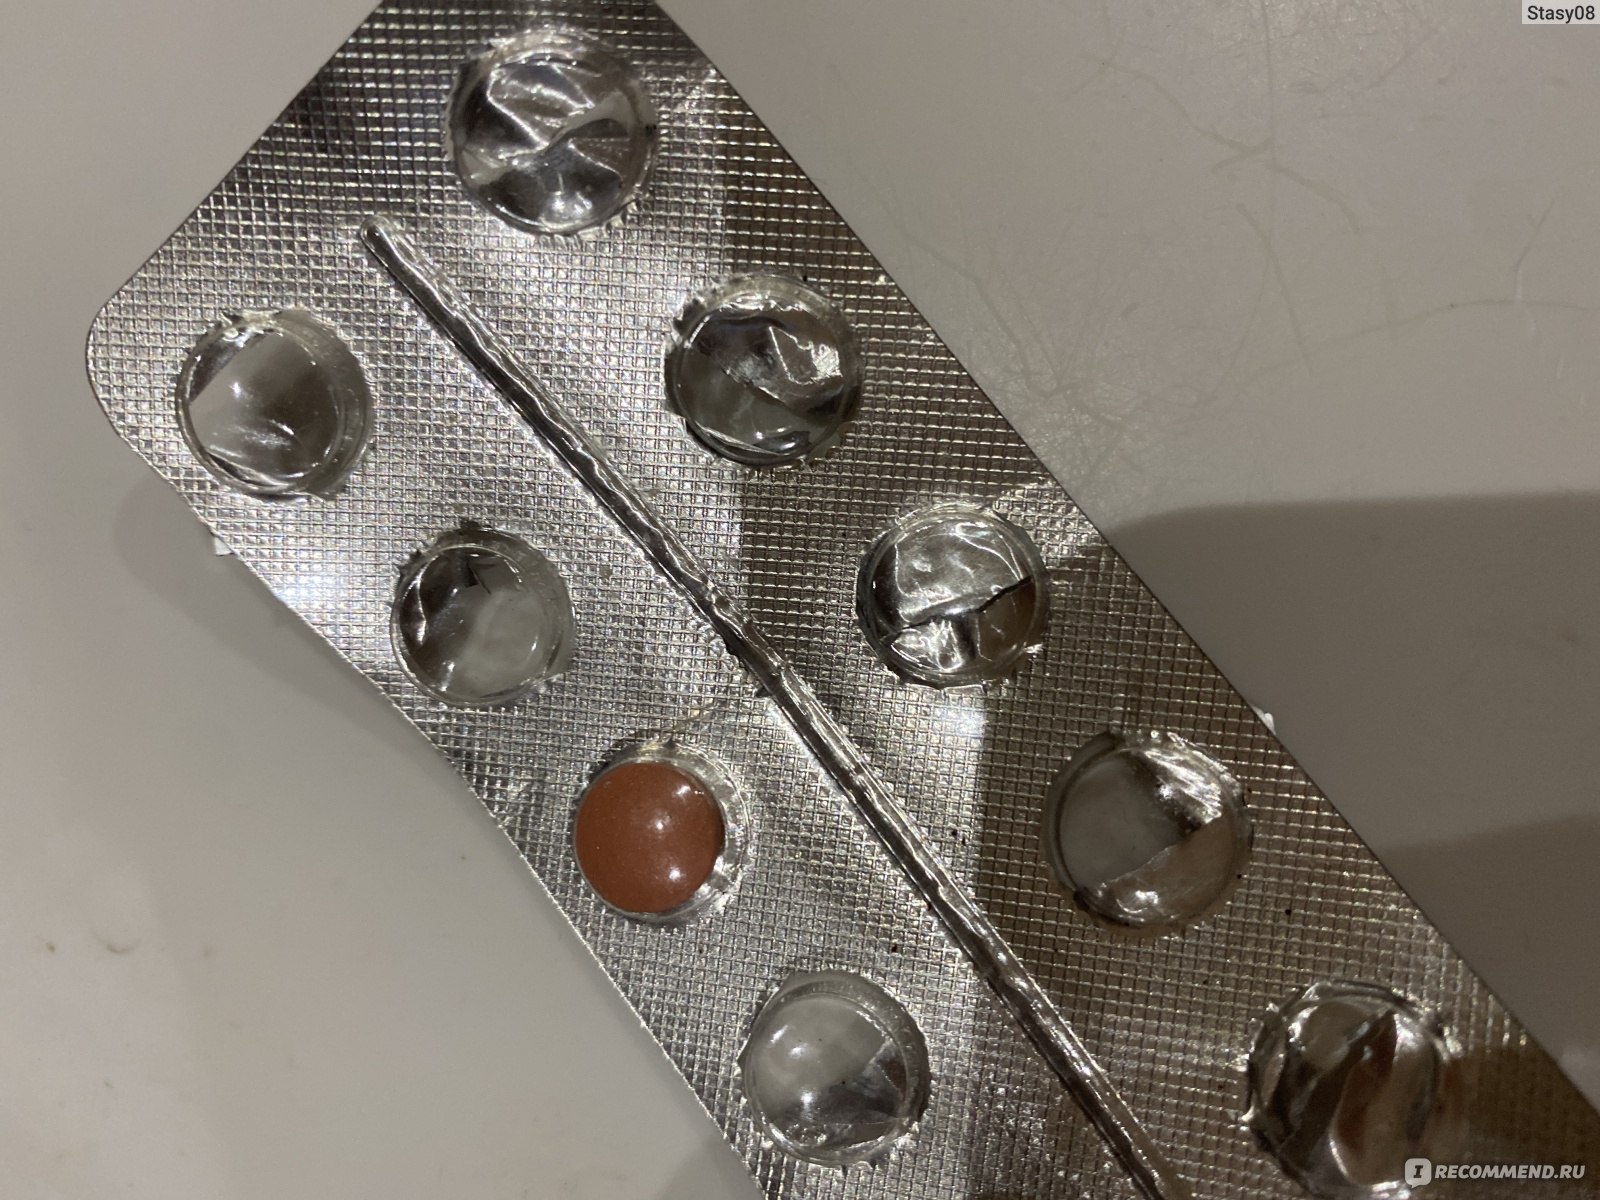 Таблетки Гино-тардиферон антианемический препарат - «Очень эффективный .